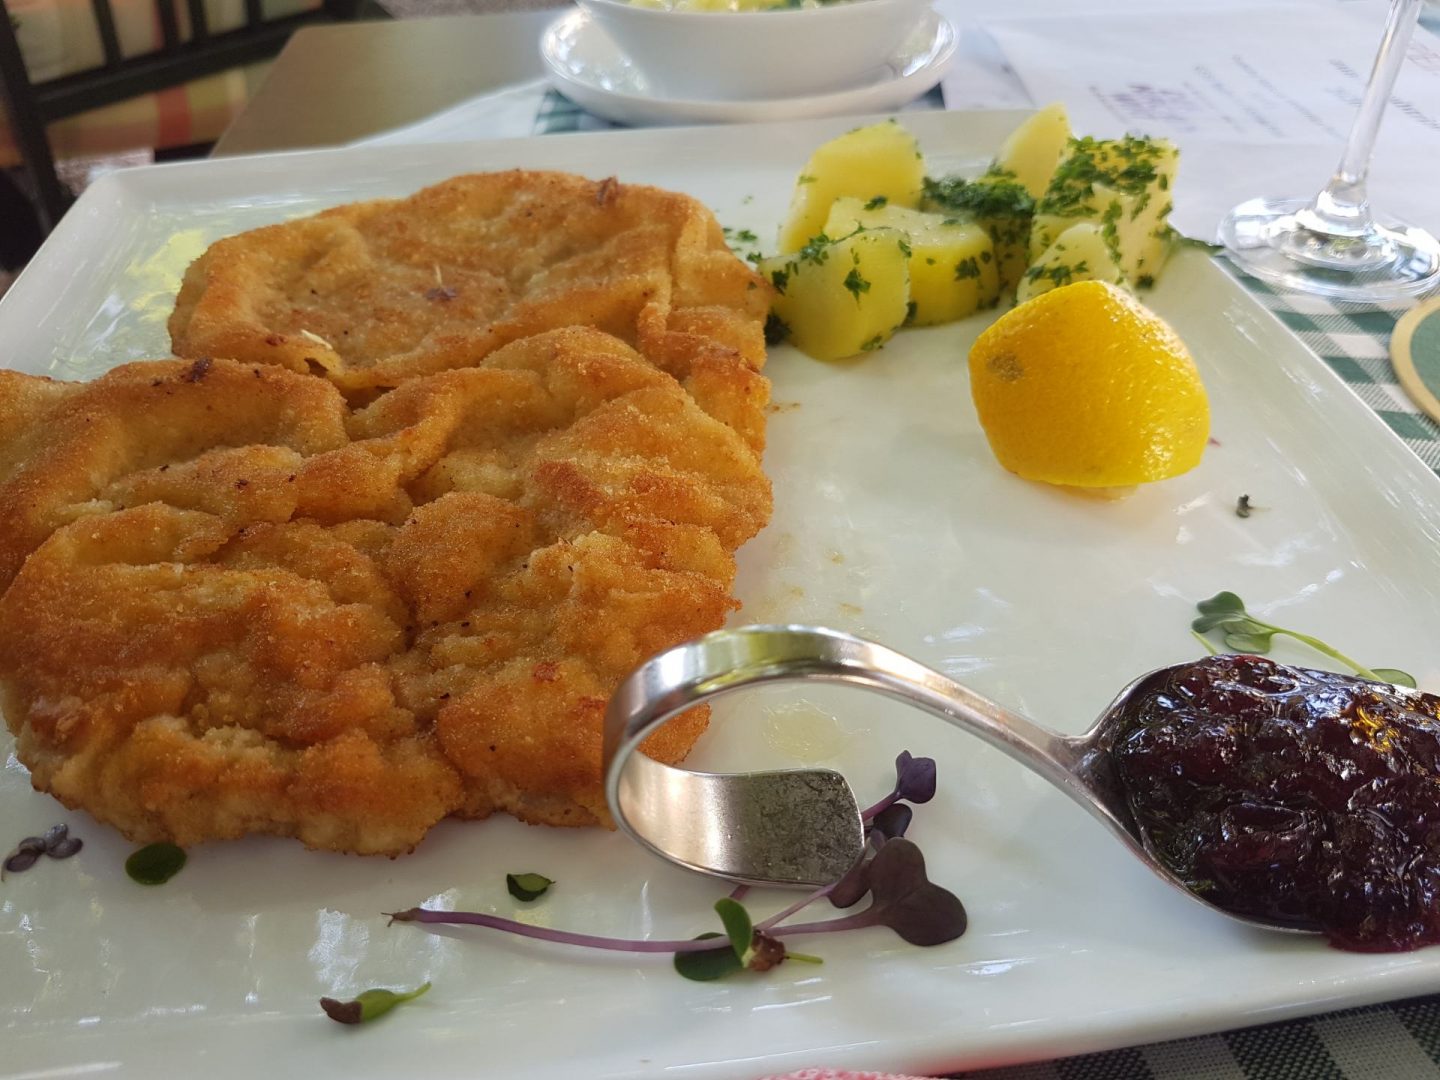 Erfahrung Bewertung Kritik Kirchenwirt Reith im Alpbachtal Wiener Schnitzel Foodblog Sternestulle